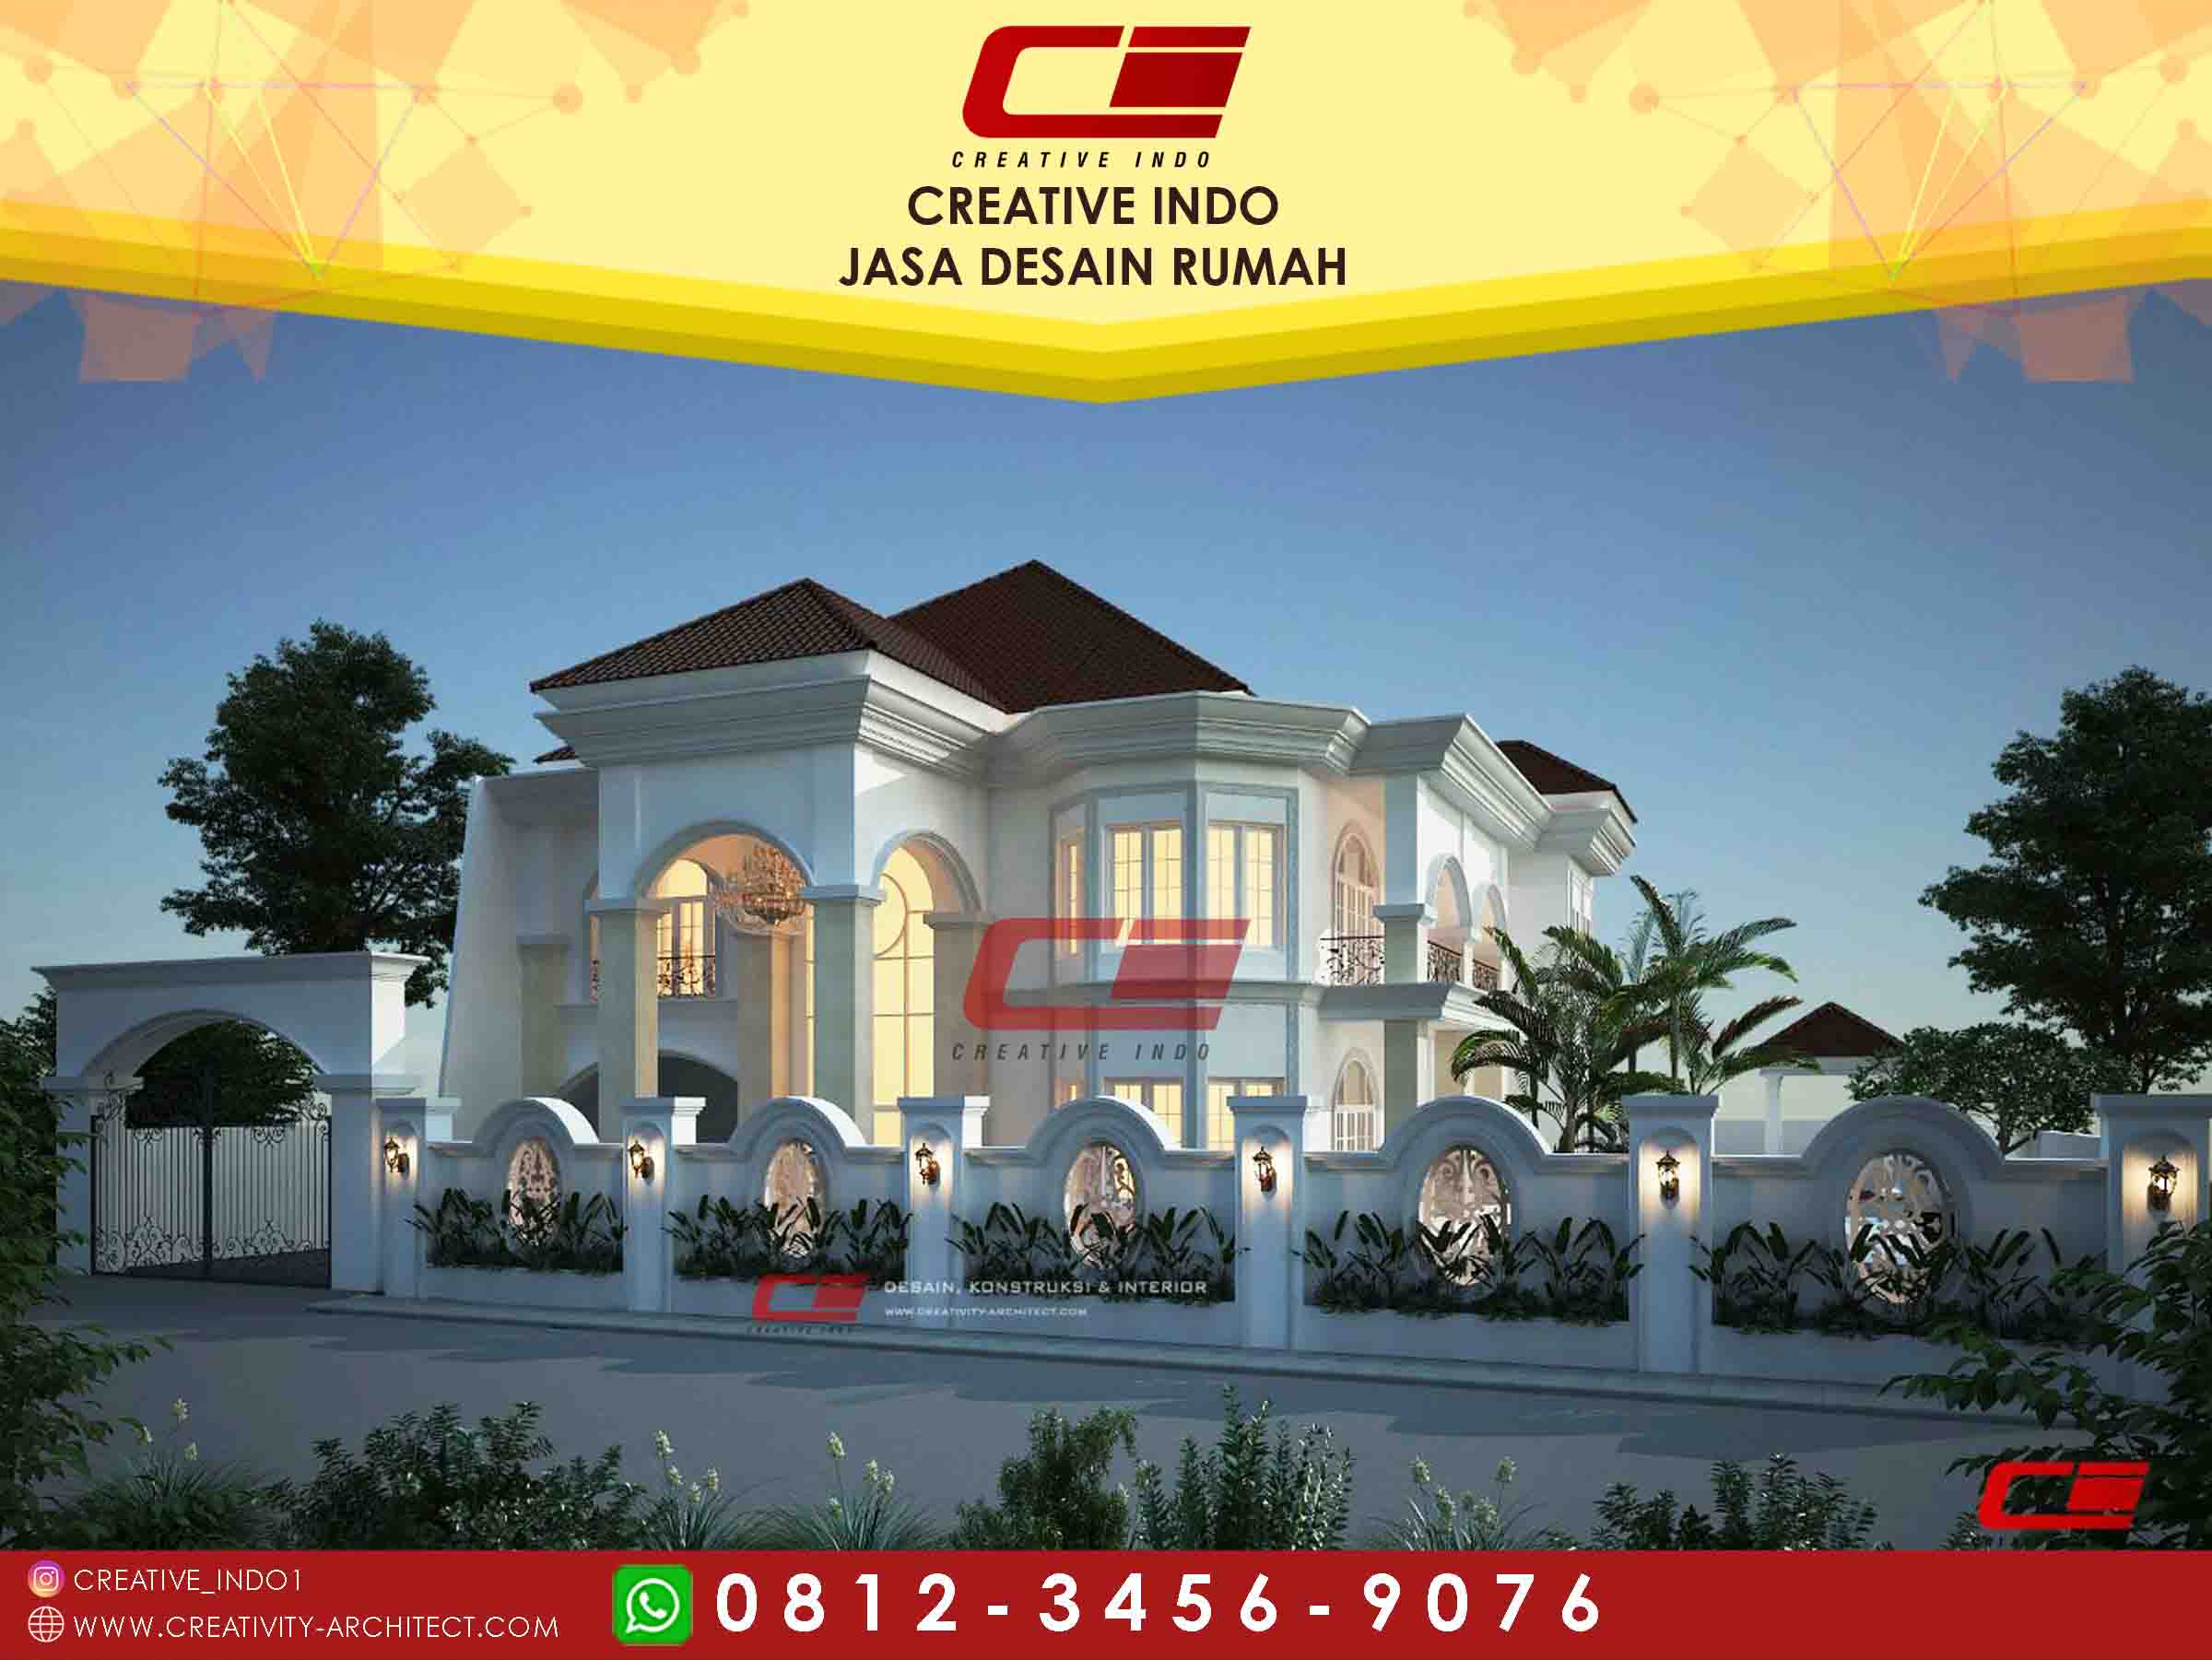 Jasa Desain Rumah Palembang